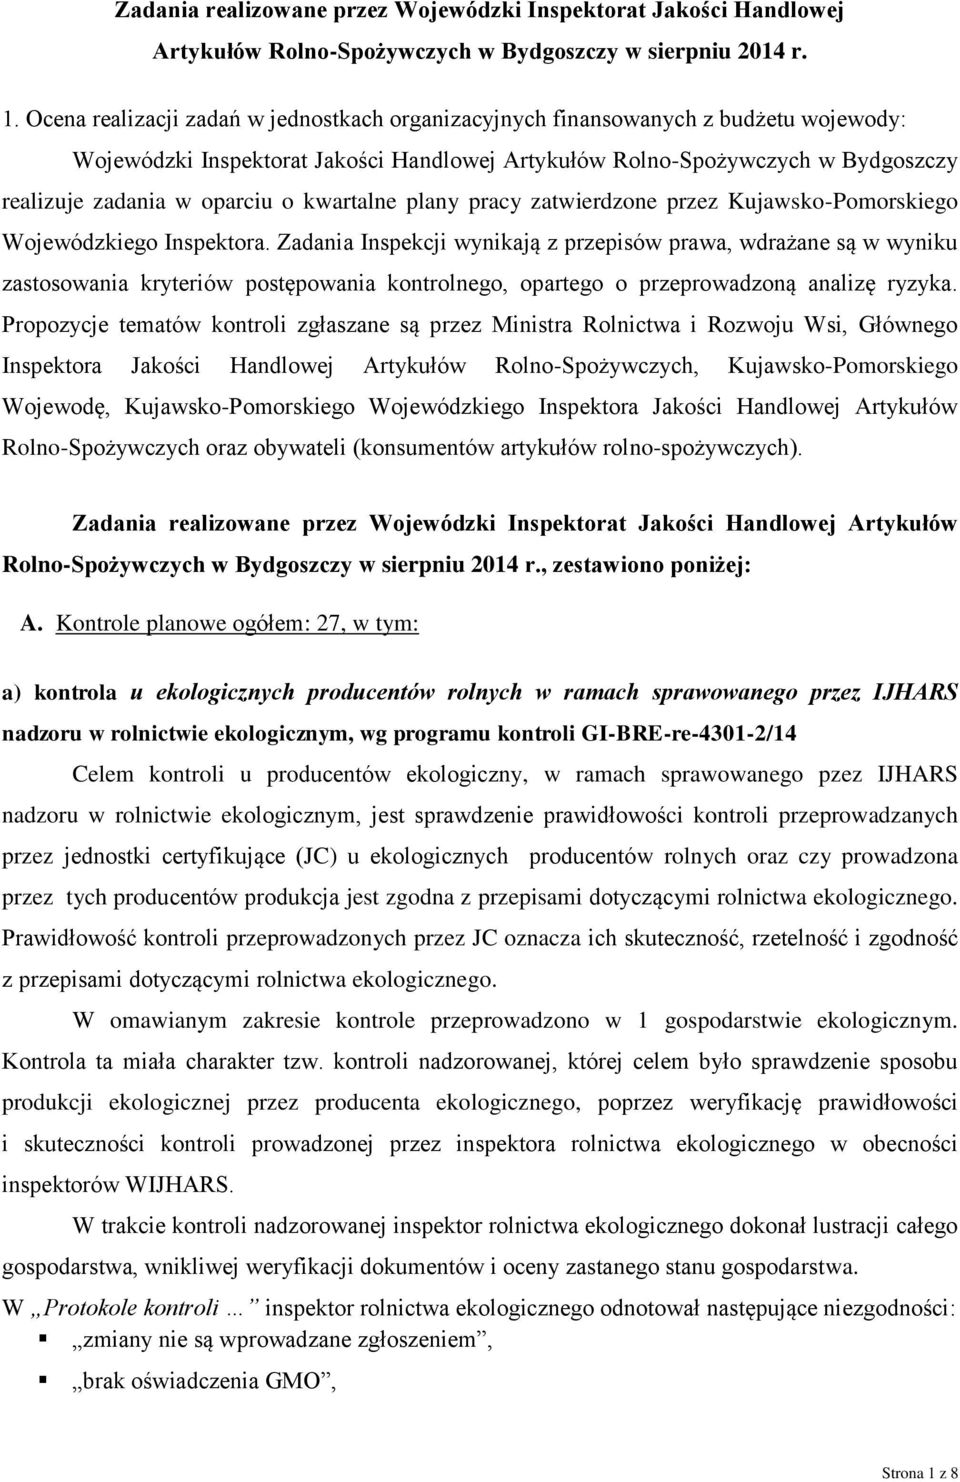 kwartalne plany pracy zatwierdzone przez Kujawsko-Pomorskiego Wojewódzkiego Inspektora.